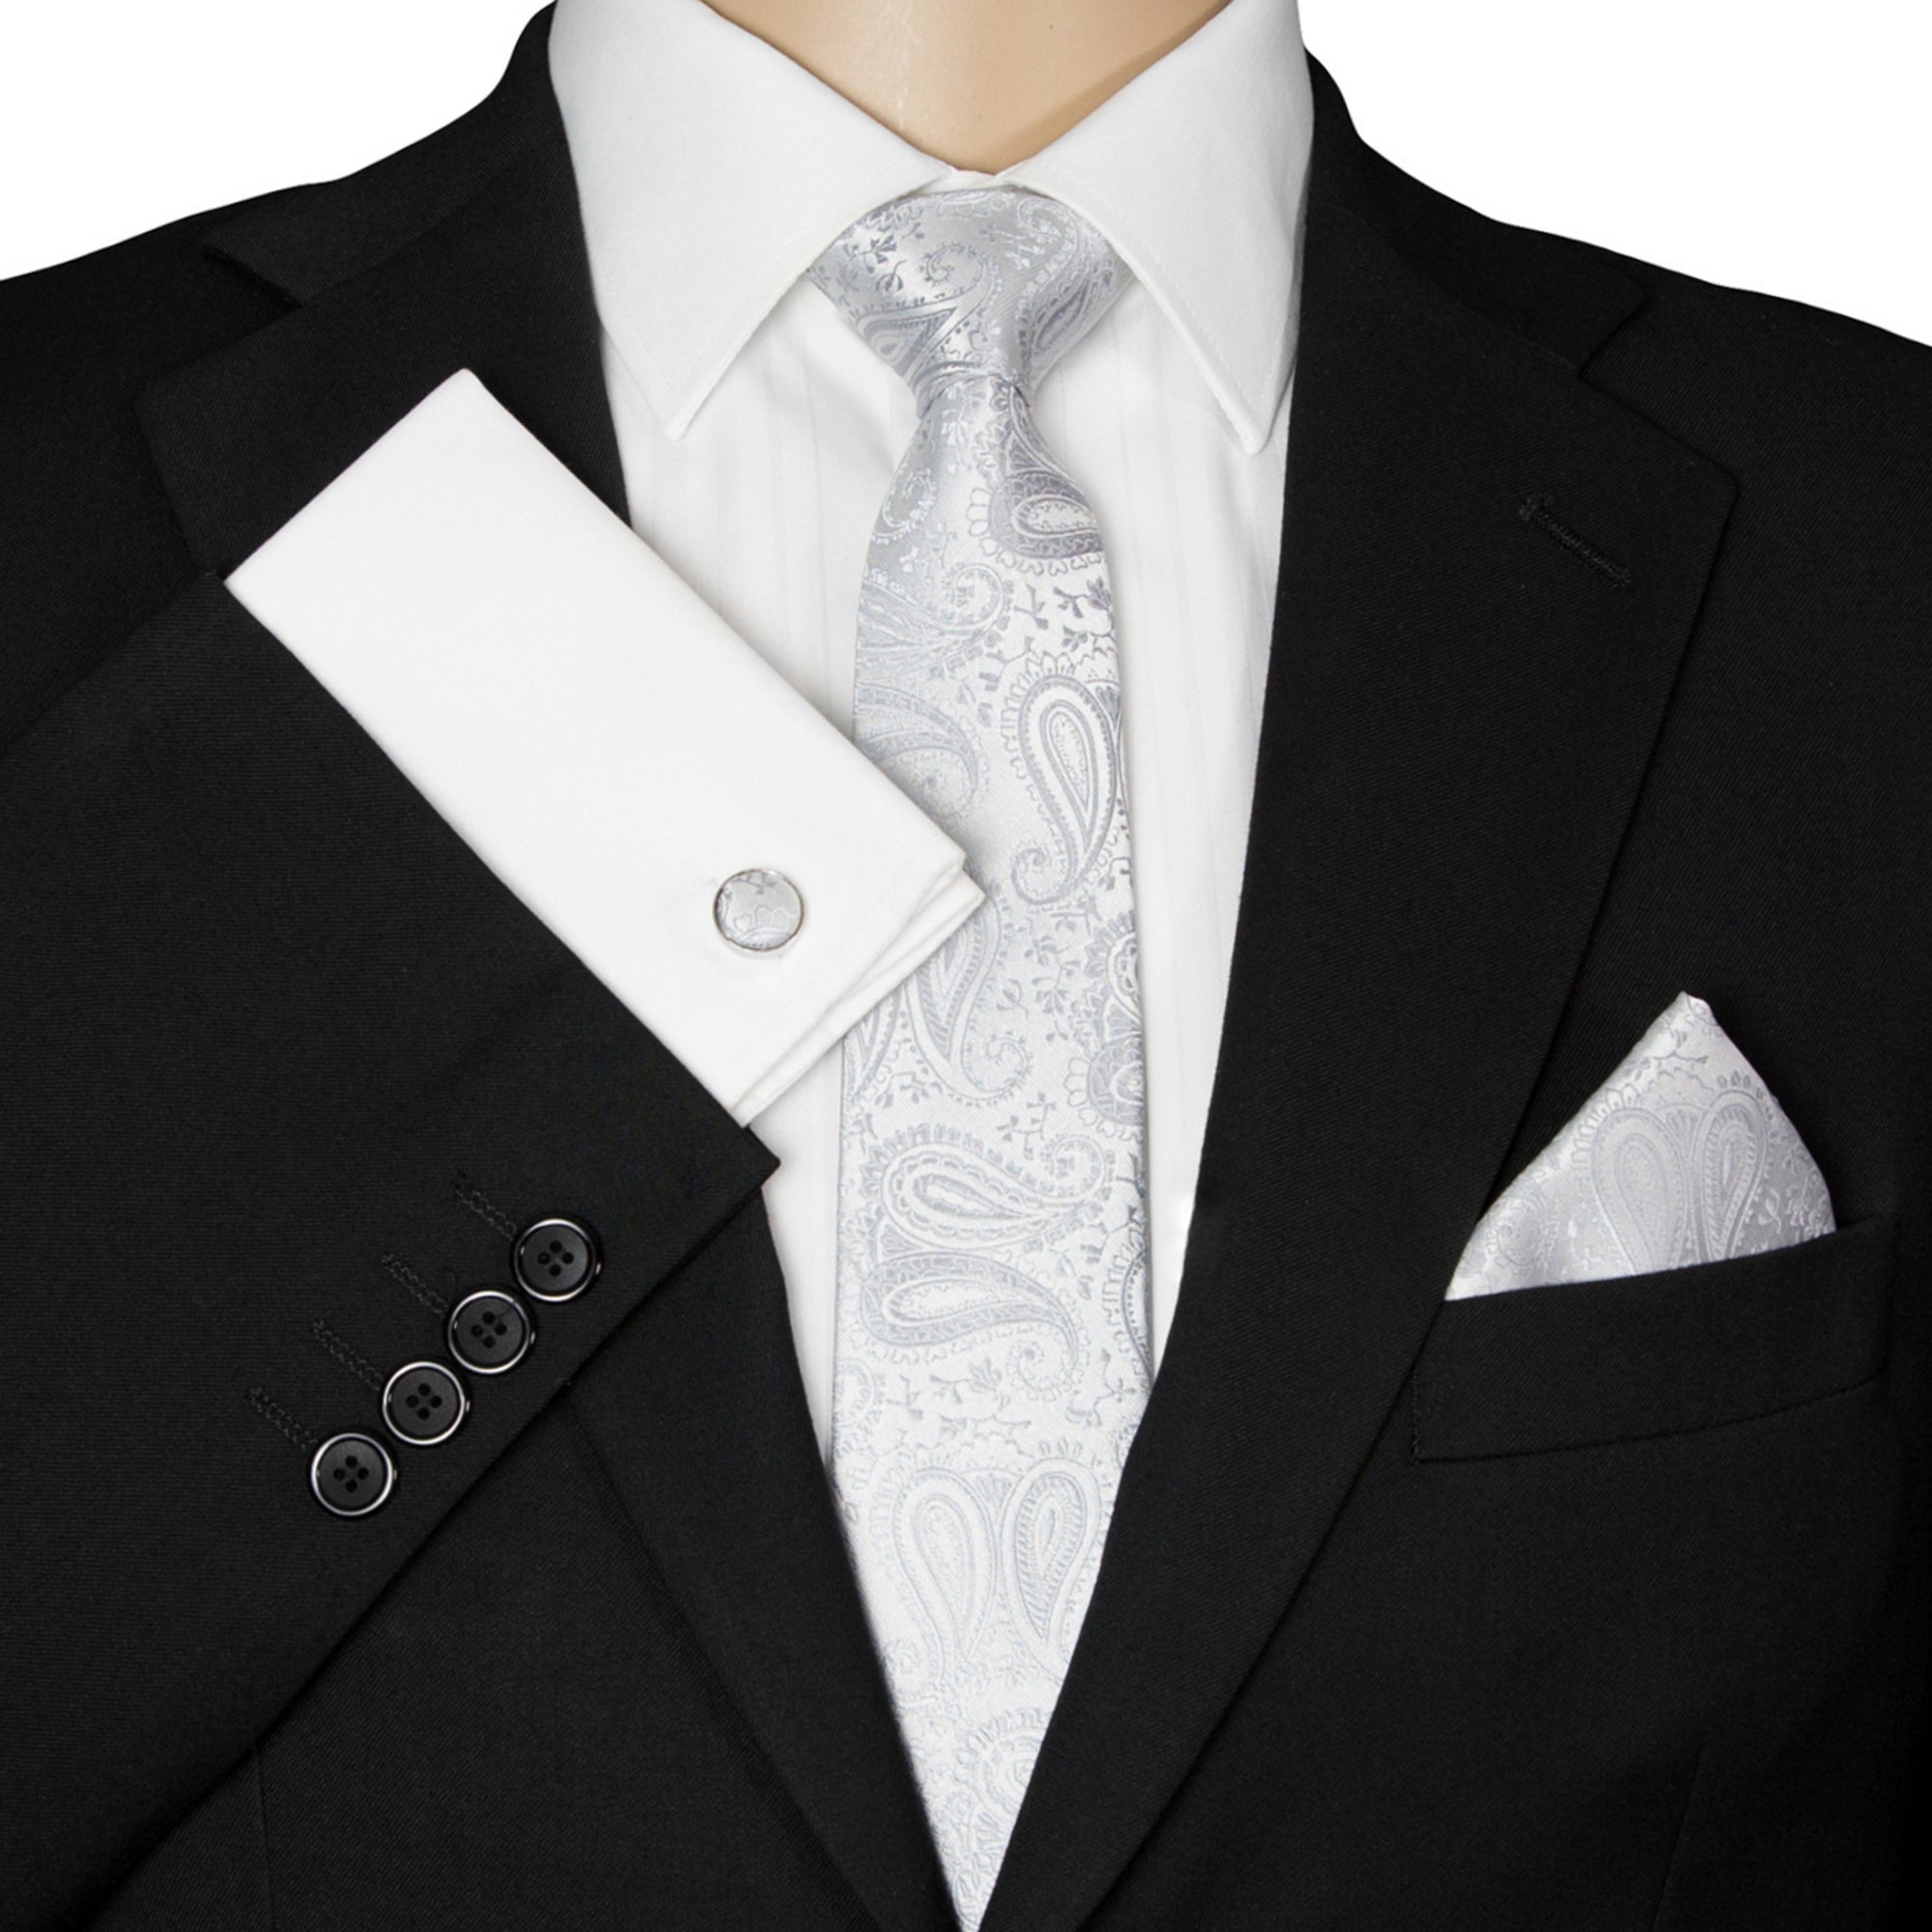 Kaufen Sie Silber-Graue Paisley-Krawatte | Designt für GASSANIshop.de -  GASSANI Krawatten